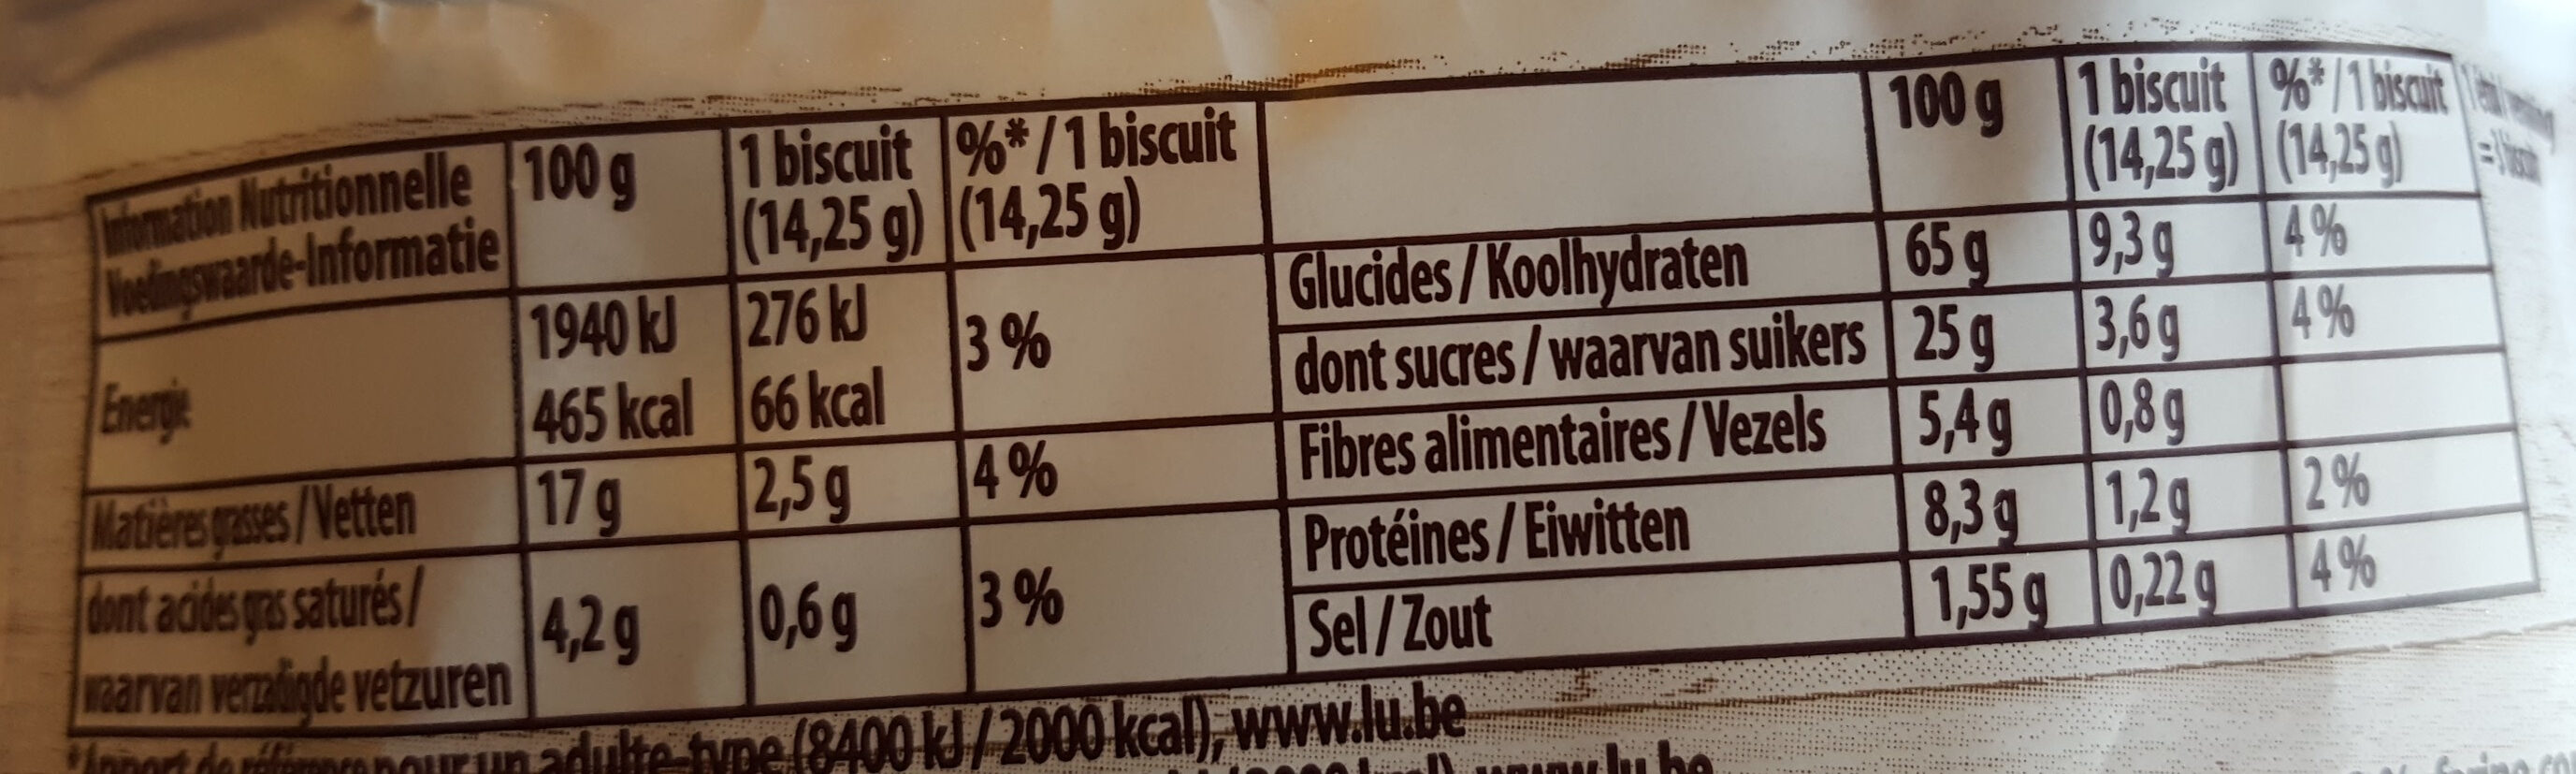 Grany - Biscuit céréales - Tableau nutritionnel